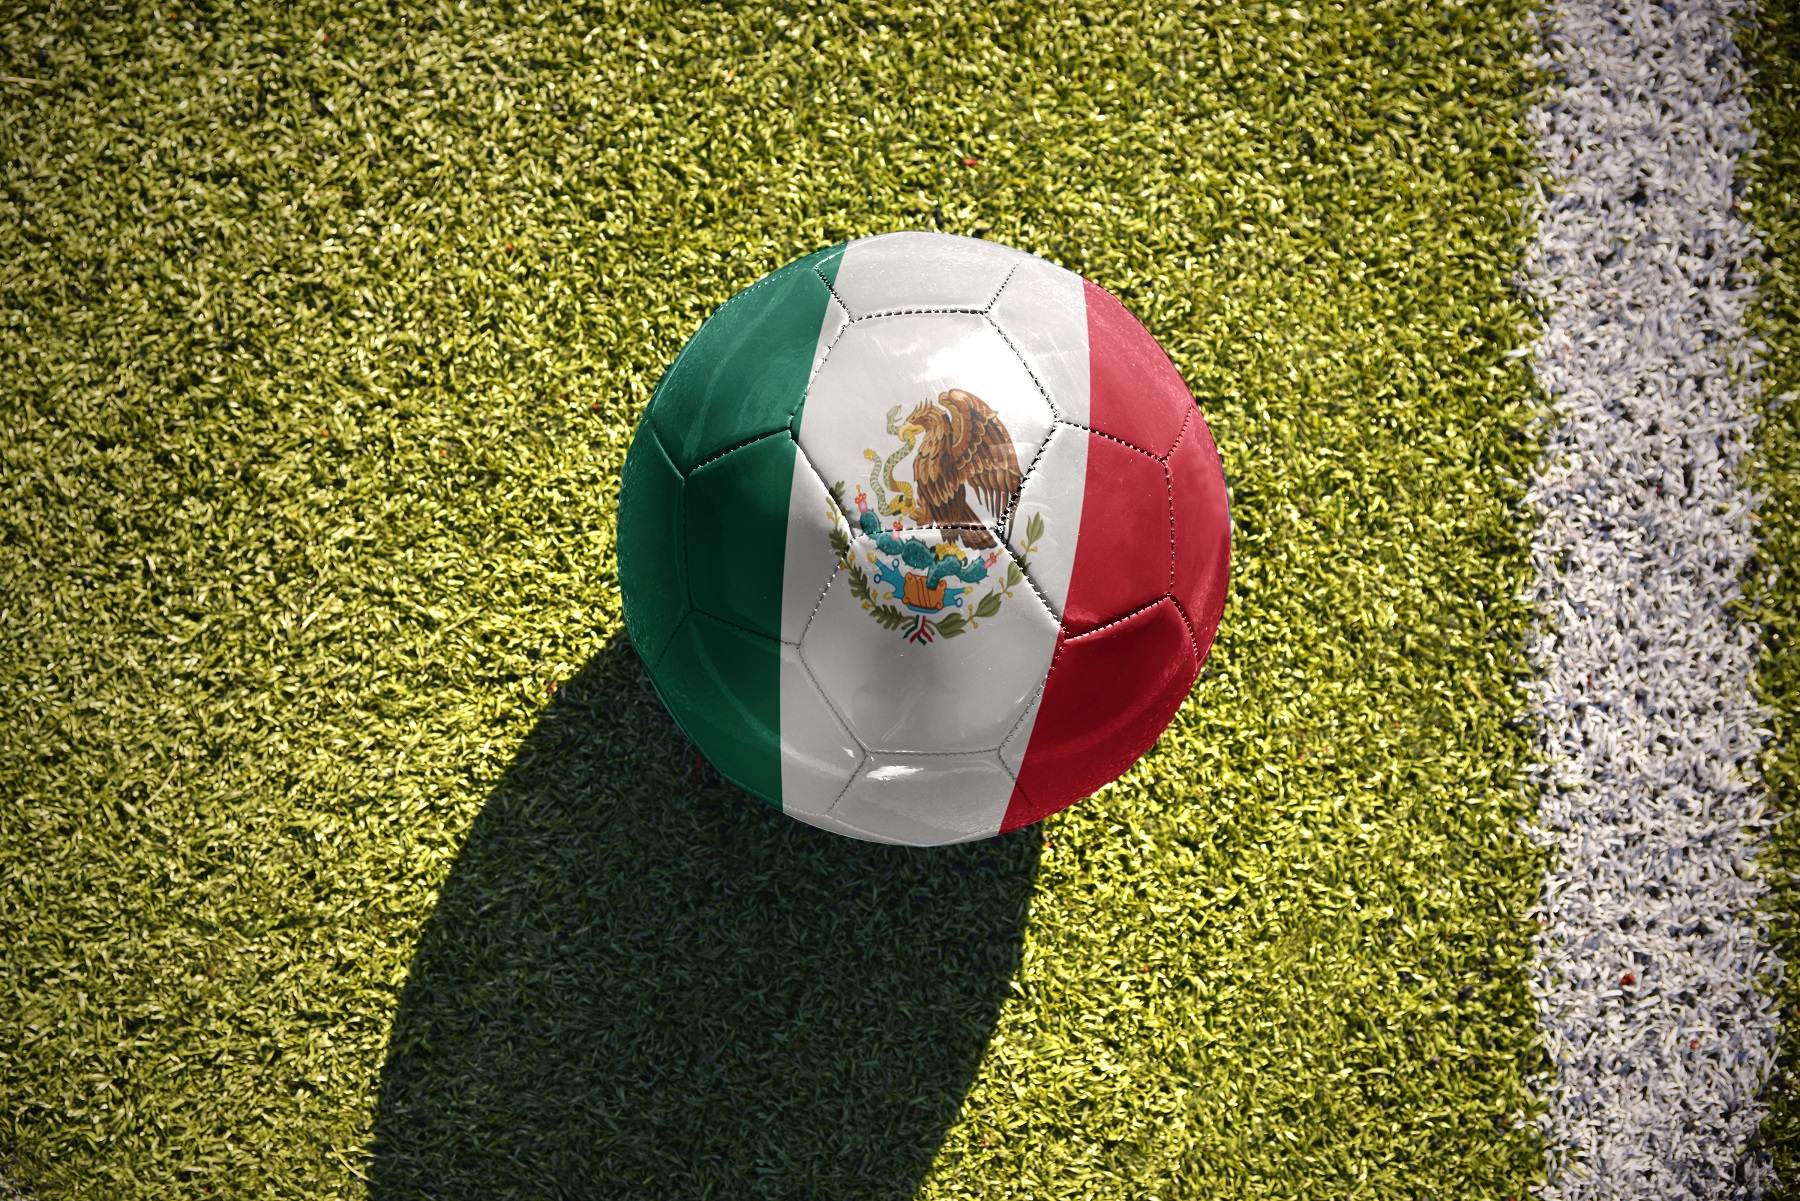 Szanse Meksyku na MŚ 2022 są całkiem spore. Nie da się ukryć, że to obok reprezentacji Polski drugi największy kandydat do zajęcia miejsca tuż za plecami Argentyny. Wypada zatem nieco bliżej przyjrzeć się kadrze drużyny z Ameryki Północnej i zastanowić się, jak daleko mogą zajść na zbliżającym się mundialu. Reprezentacja Meksyku w piłce nożnej - podstawowe informacje Zawody w Katarze będą dla reprezentacji Meksyku siedemnastym oficjalnym występem na największej piłkarskiej imprezie na świecie. Ostatnie siedem kończyli na 1/8 finału. Czy zbliżający się turniej będzie tym, w którym przerwą tę niechlubną passę? Trener Szkoleniowcem drużyny narodowej jest Gerardo Martino, który pracuje tam od 2019 roku. Trójkolorowi nie mieli zatem okazji zagrać jeszcze ze swoim szkoleniowcem na mundialu, ale jego dorobek reprezentacyjny zawiera już triumf w Pucharze CONCACAF w 2019 roku. Skład Zespół z Meksyku opiera się głównie na zawodnikach z ich rodzimej ligi, która mimo średniej popularności w Europie może pochwalić się całkiem wysokim poziomem rozgrywek. Ulubionymi formacjami Meksykanów są 4-3-3 oraz 3-4-3. Właśnie w tych ustawieniach zdaniem trenera reprezentanci kraju czują się najlepiej. Największe gwiazdy Największymi gwiazdami reprezentacji są bez wątpienia Ochoa oraz Jimenez. Ten pierwszy, to doświadczony golkiper, którego na poprzednich mundialach zdążyło pokochać i poznać większość piłkarskich sympatyków. Napastnik Wolverhampton posiada natomiast olbrzymią piłkarską jakość, lecz parę ostatnich miesięcy z pewnością nie zaliczy do najlepszych w swojej karierze. Kibice La Liga mogą kojarzyć także Araujo czy też Coronę. Jakie szanse Meksyku na MŚ 2022? Jeśli ktoś ma sprawić niespodziankę w grupie C, to z dużą dozą prawdopodobieństwa będzie to właśnie Meksyk. Typy na mundial 2022 w kwestii awansu Polaków (1.90) oraz Meksykanów (1.90) z drugiego miejsca są bowiem bardzo wyrównane. Zwyciężyć w grupie, w której jest Argentyna, może być trudno (6.00). O to raczej podopieczni Gerardo Martino walczyć nie będą. Wydaje się, że interesują ich nieco bardziej przyziemne kwestie. Meksyk na MŚ - zakłady i typy bukmacherskie Oczywiście najciekawsze zakłady bukmacherskie z udziałem reprezentacji Meksyku to te, które są związane z bezpośrednimi pojedynkami grupowymi oraz ewentualnym awansem tudzież jego brakiem. Dobrym pomysłem zdaję się być także zakład odnoszący się do tego, czy Jimenez da radę pokonać na turnieju bramkarza któregoś z rywali chociaż jeden raz. Meksyk - Polska zakłady na MŚ 2022 To otwierające spotkanie będzie dla obu reprezentacji jednym z najważniejszych, o ile nie najważniejszym pojedynkiem w całej fazie grupowej. Porażka Meksyku w starciu z naszą kadrą niemal zamyka im drogę do awansu do kolejnej rundy. Z drugiej strony pokonanie Lewandowskiego i spółki da im ogrom spokoju, gdyż kwestia awansu pozostanie w ich rękach oraz nogach. Jedyne co będą musieli zrobić, to postawić kropkę nad i w pojedynku z Arabią Saudyjską. Jeśli Meksyk wygra z Polską (2.80), to autostrada do fazy pucharowej wydaję się stać dla nich otworem. Argentyna - Meksyk zakłady na MŚ 2022 Faworytem do zwycięstwa są oczywiście aktualni mistrzowie Ameryki Południowej. Po zdobyciu Copa America Argentyna kontynuuje serię spotkań bez porażki, która już dawno przebiła barierę trzydziestu. Pokonanie Argentyny przez Meksyk (5.00) jest dla wielu niewyobrażalne. Ten mecz powinien relatywnie mało zmienić w sytuacji drużyny trenera Gerardo Martino, gdyż najważniejsze pojedynki odbędą się w pierwszej oraz ostatniej kolejce fazy grupowej. Arabia Saudyjska - Meksyk zakłady na MŚ 2022 To właśnie na tej potyczce w głównej mierze będzie zapewne skupiał się Meksyk. Przewidywania na MŚ 2022 nie uwzględniają raczej ich porażki (6.75), albowiem na papierze są zdecydowanie silniejszym zespołem niż Arabia Saudyjska. Zwycięstwo El Tri (1.57) jest dla wielu oczywiste, ciężar spoczywający na barkach tej ekipy będzie więc ogromny. Ciekawe tylko, czy ten stres zadziała na nich mobilizująco, czy może wręcz przeciwnie.